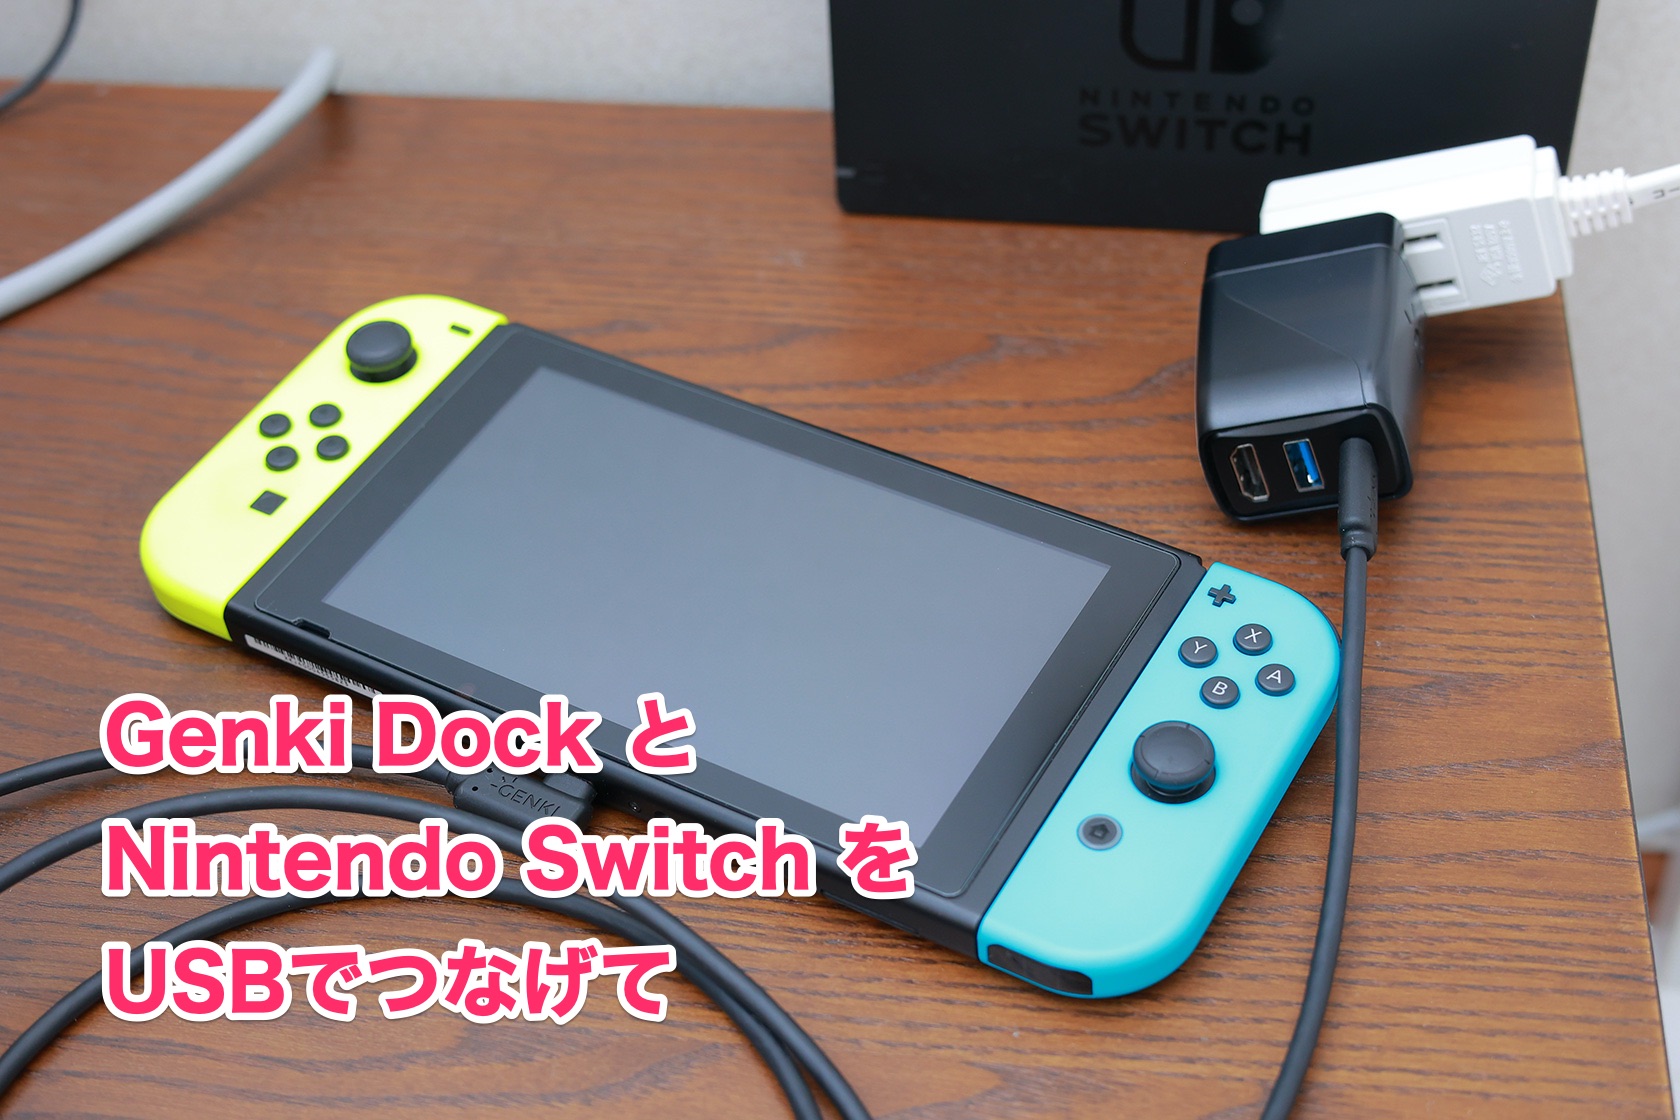 Genki Dock と Nintendo Switch を USB-C ケーブルでつなげて